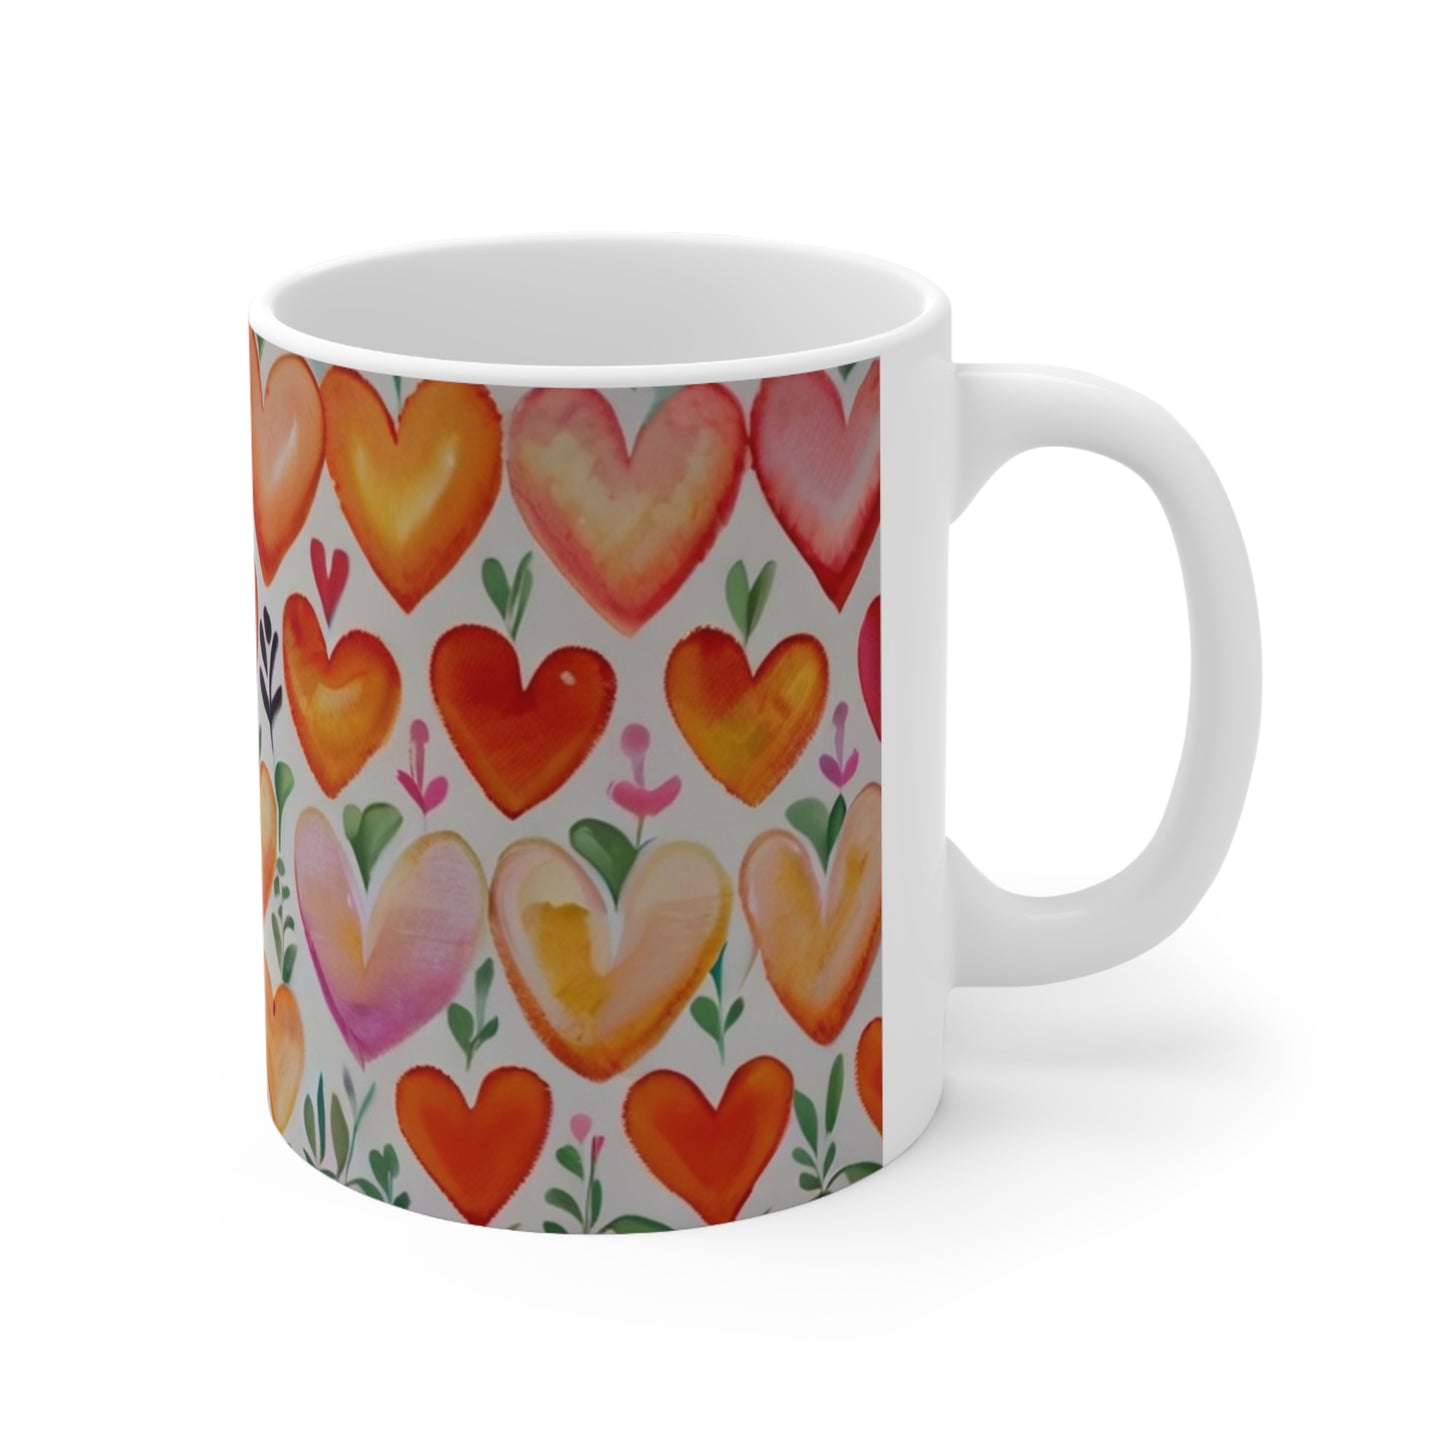 Orange Love Hearts Mug - Ceramic Coffee Mug 11oz